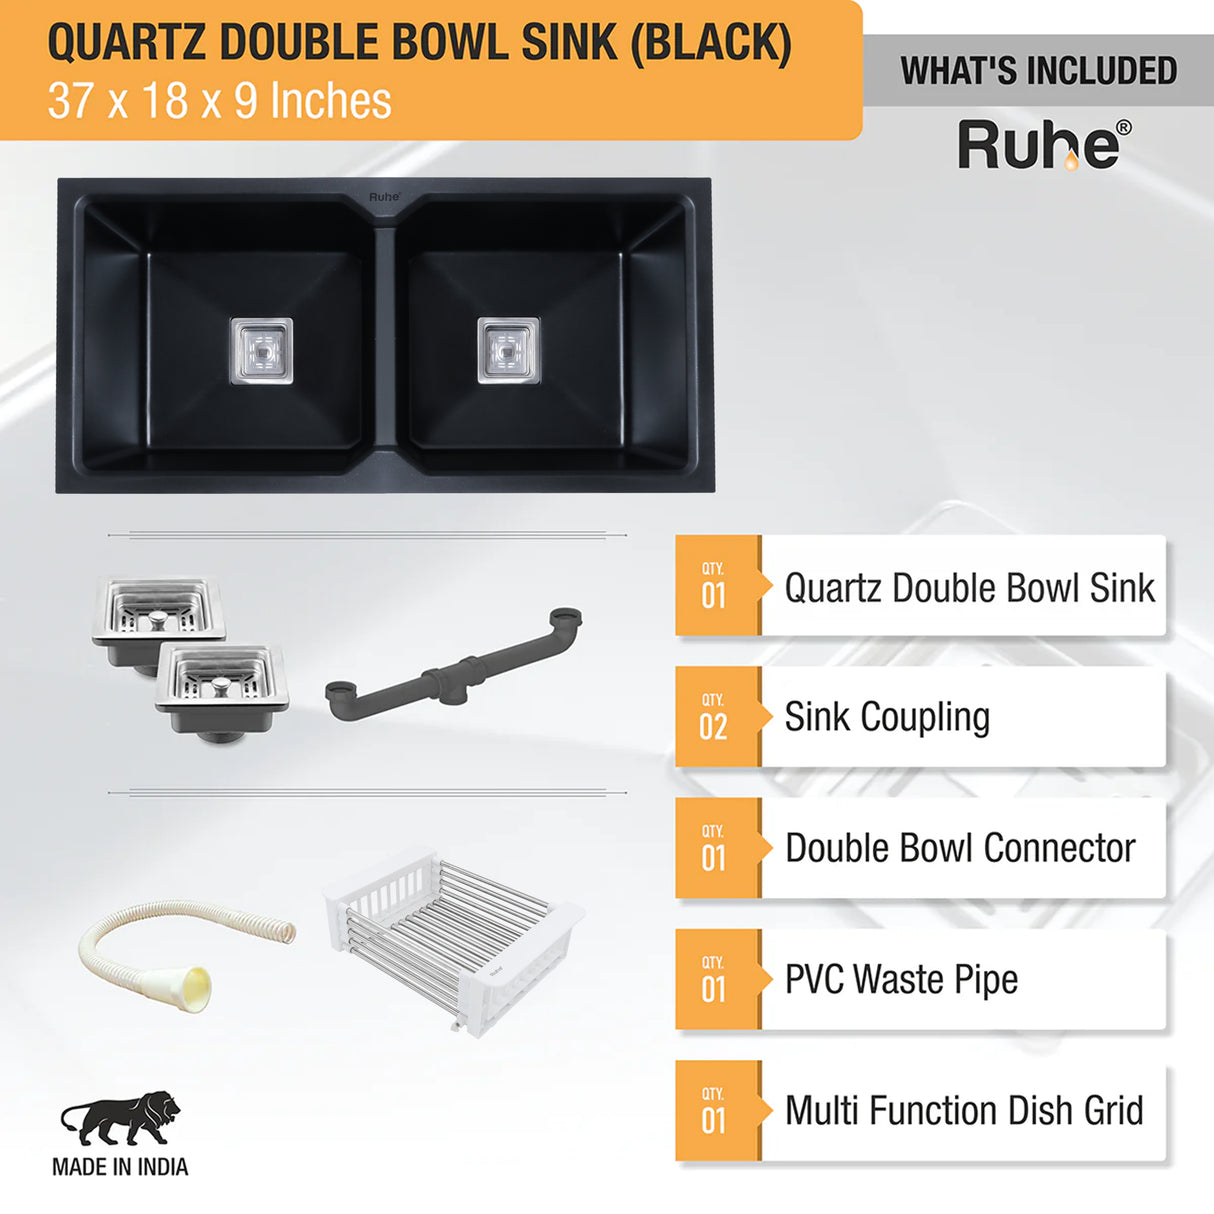 Quartz Double Bowl Kitchen Sink Accessories & Specification